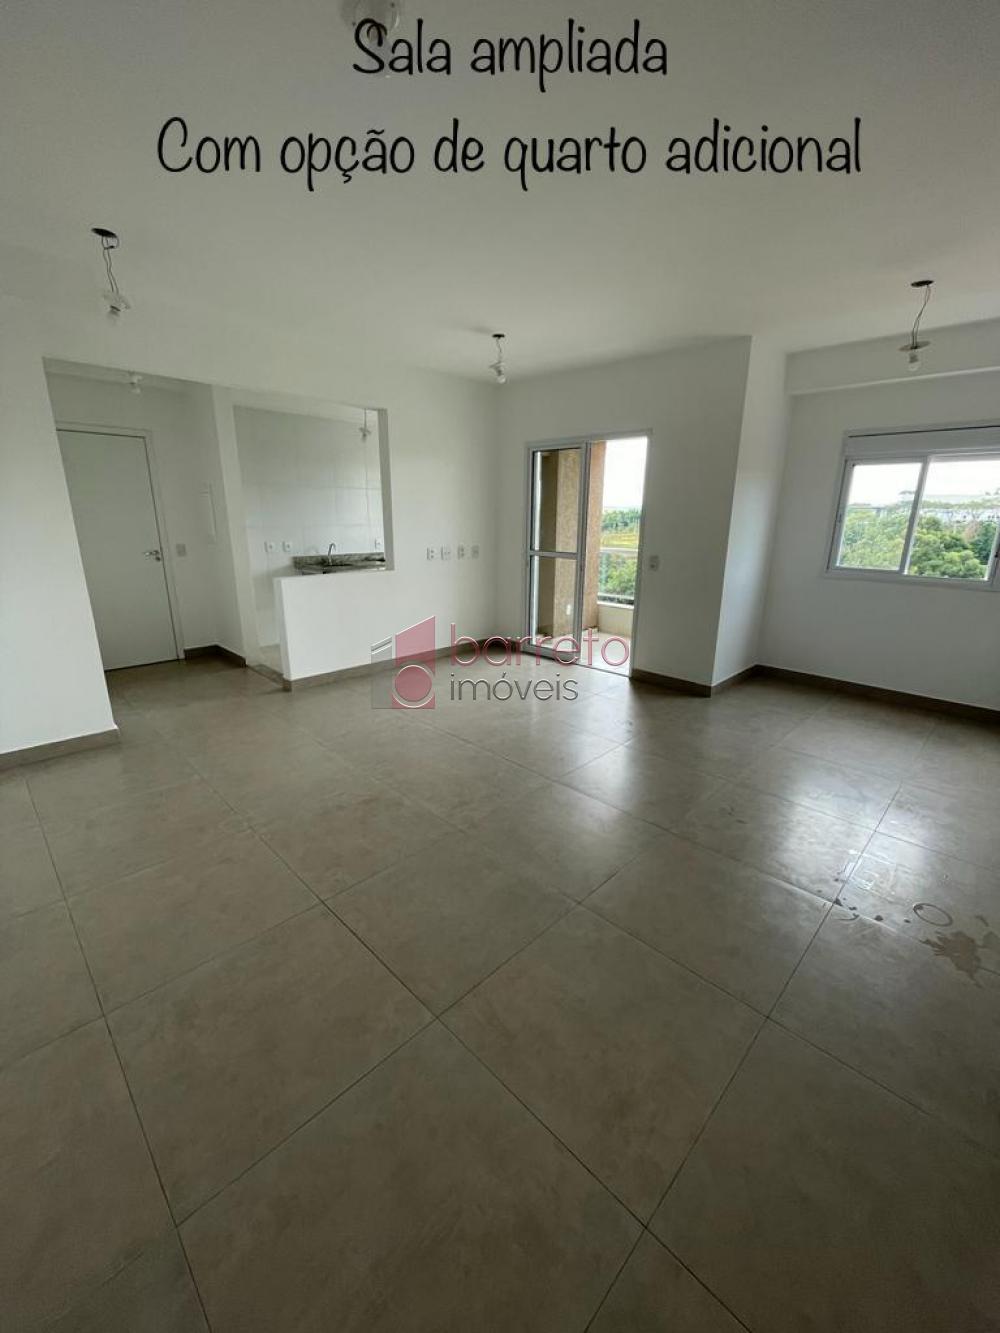 Comprar Apartamento / Padrão em Jundiaí R$ 550.000,00 - Foto 2